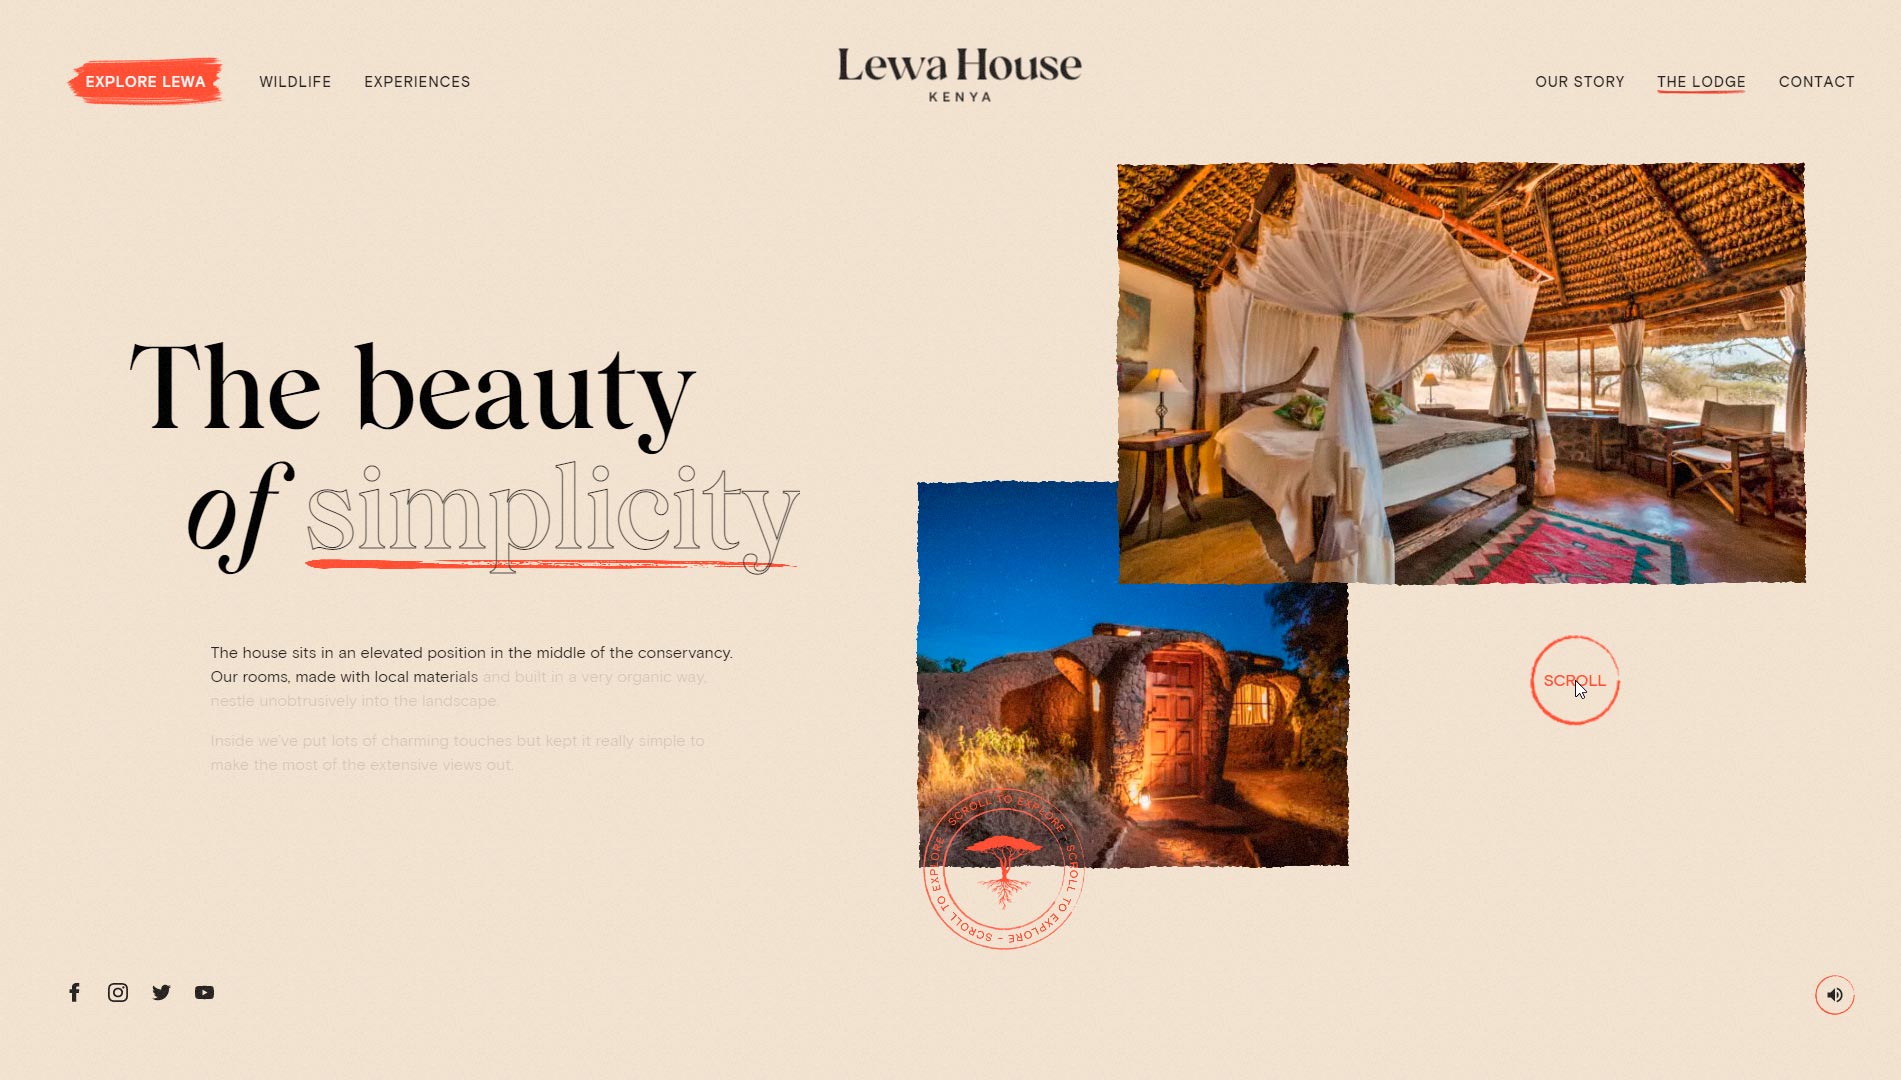 ejemplos-paginas-web-hotel-lewa-house-02-